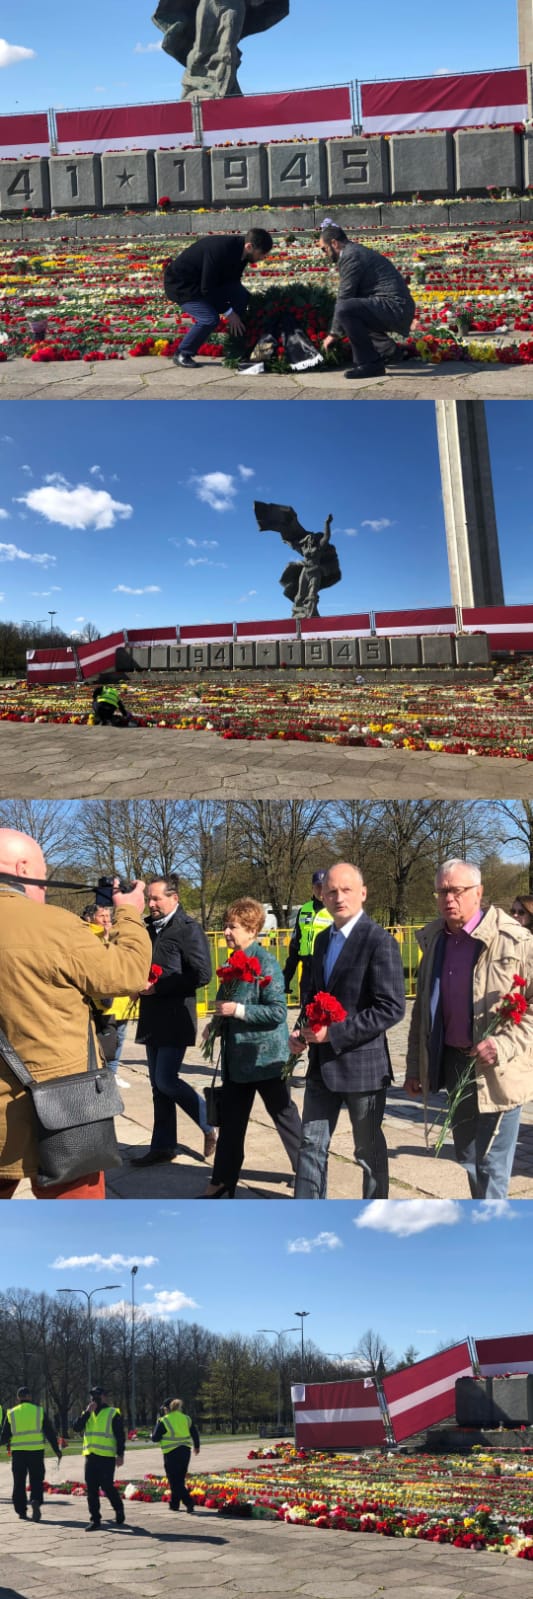 День Победы в Латвии: люди нескончаемым потоком идут к памятнику Освободителей, чтобы возложить цветы 